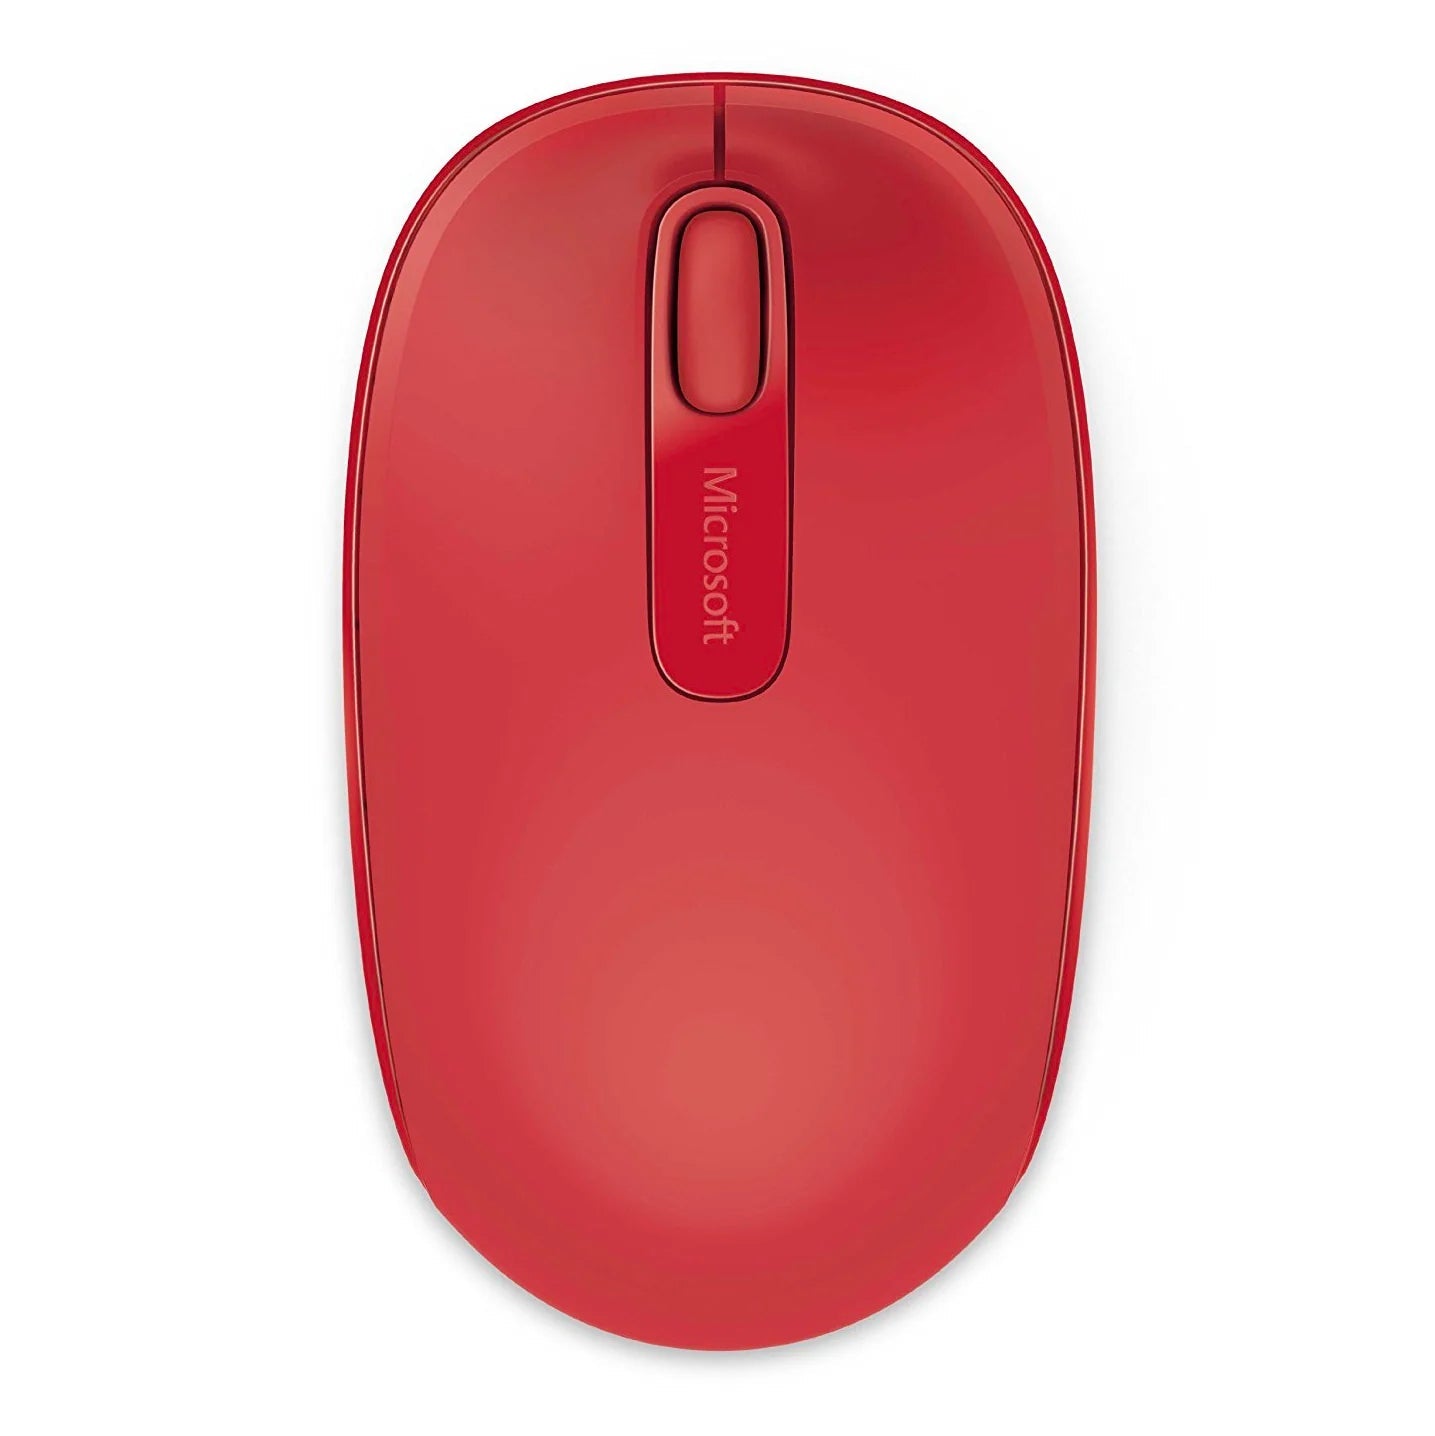 Mouse Microsoft Wireless Mobile 1850-U7Z-00031 - Rojo